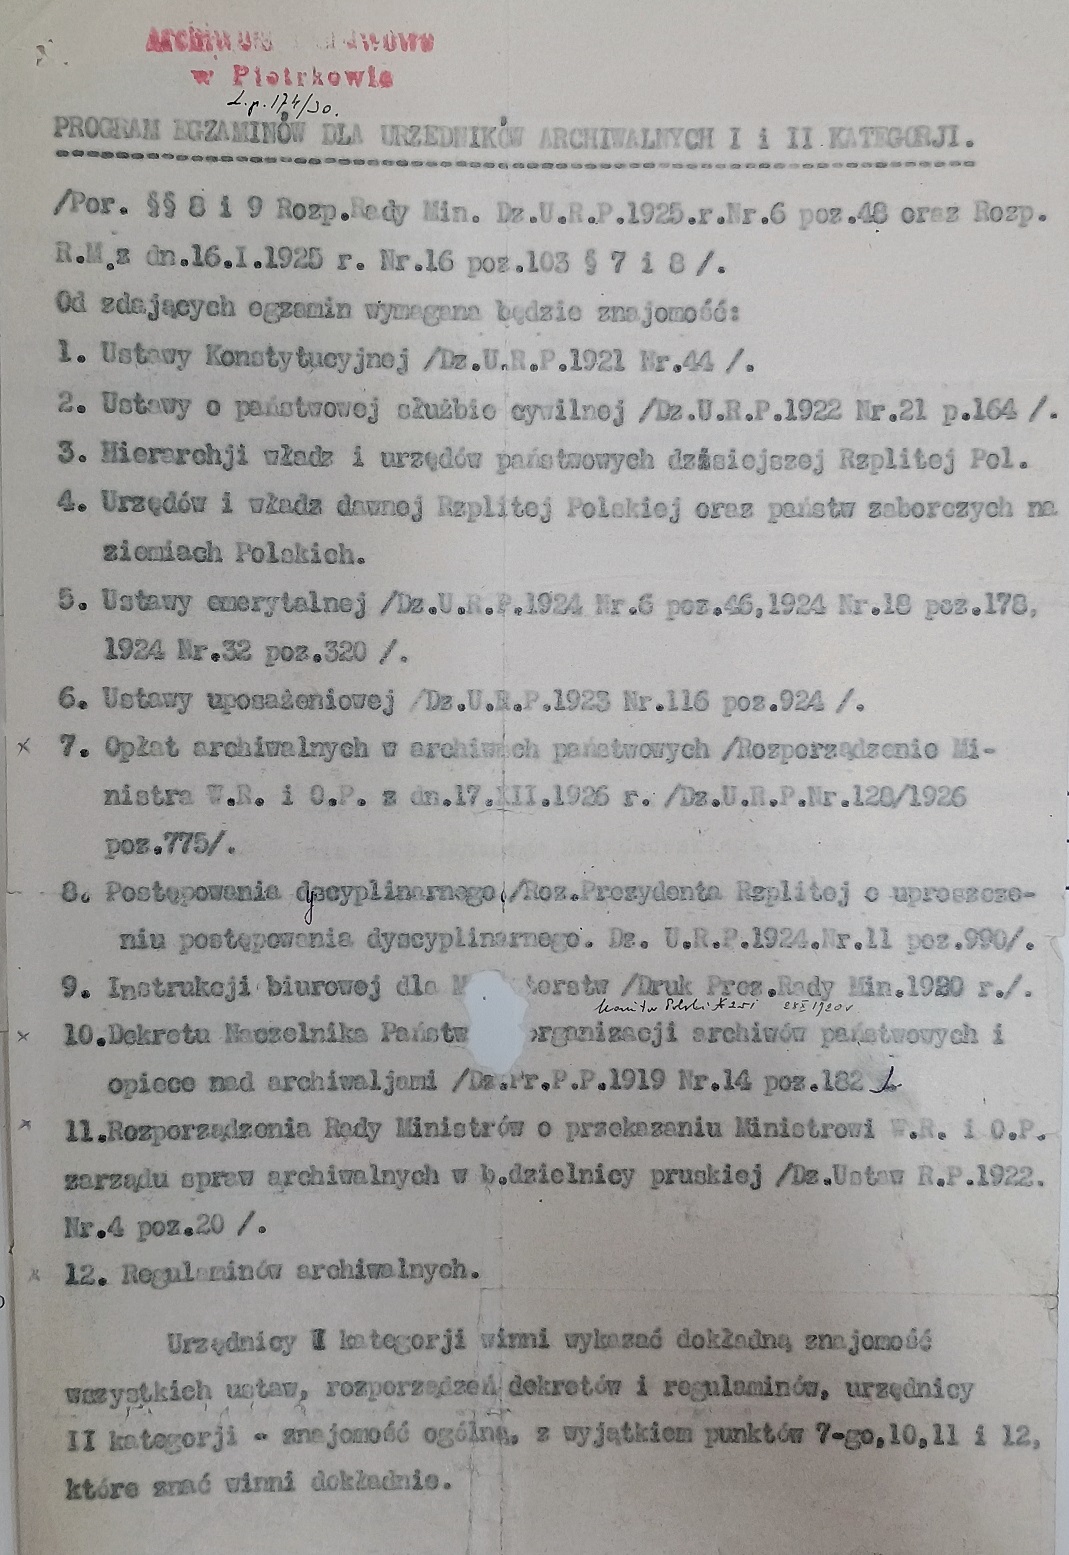 Program egzaminów dla urzędników archiwalnych I i II kategorii, 1930 r.